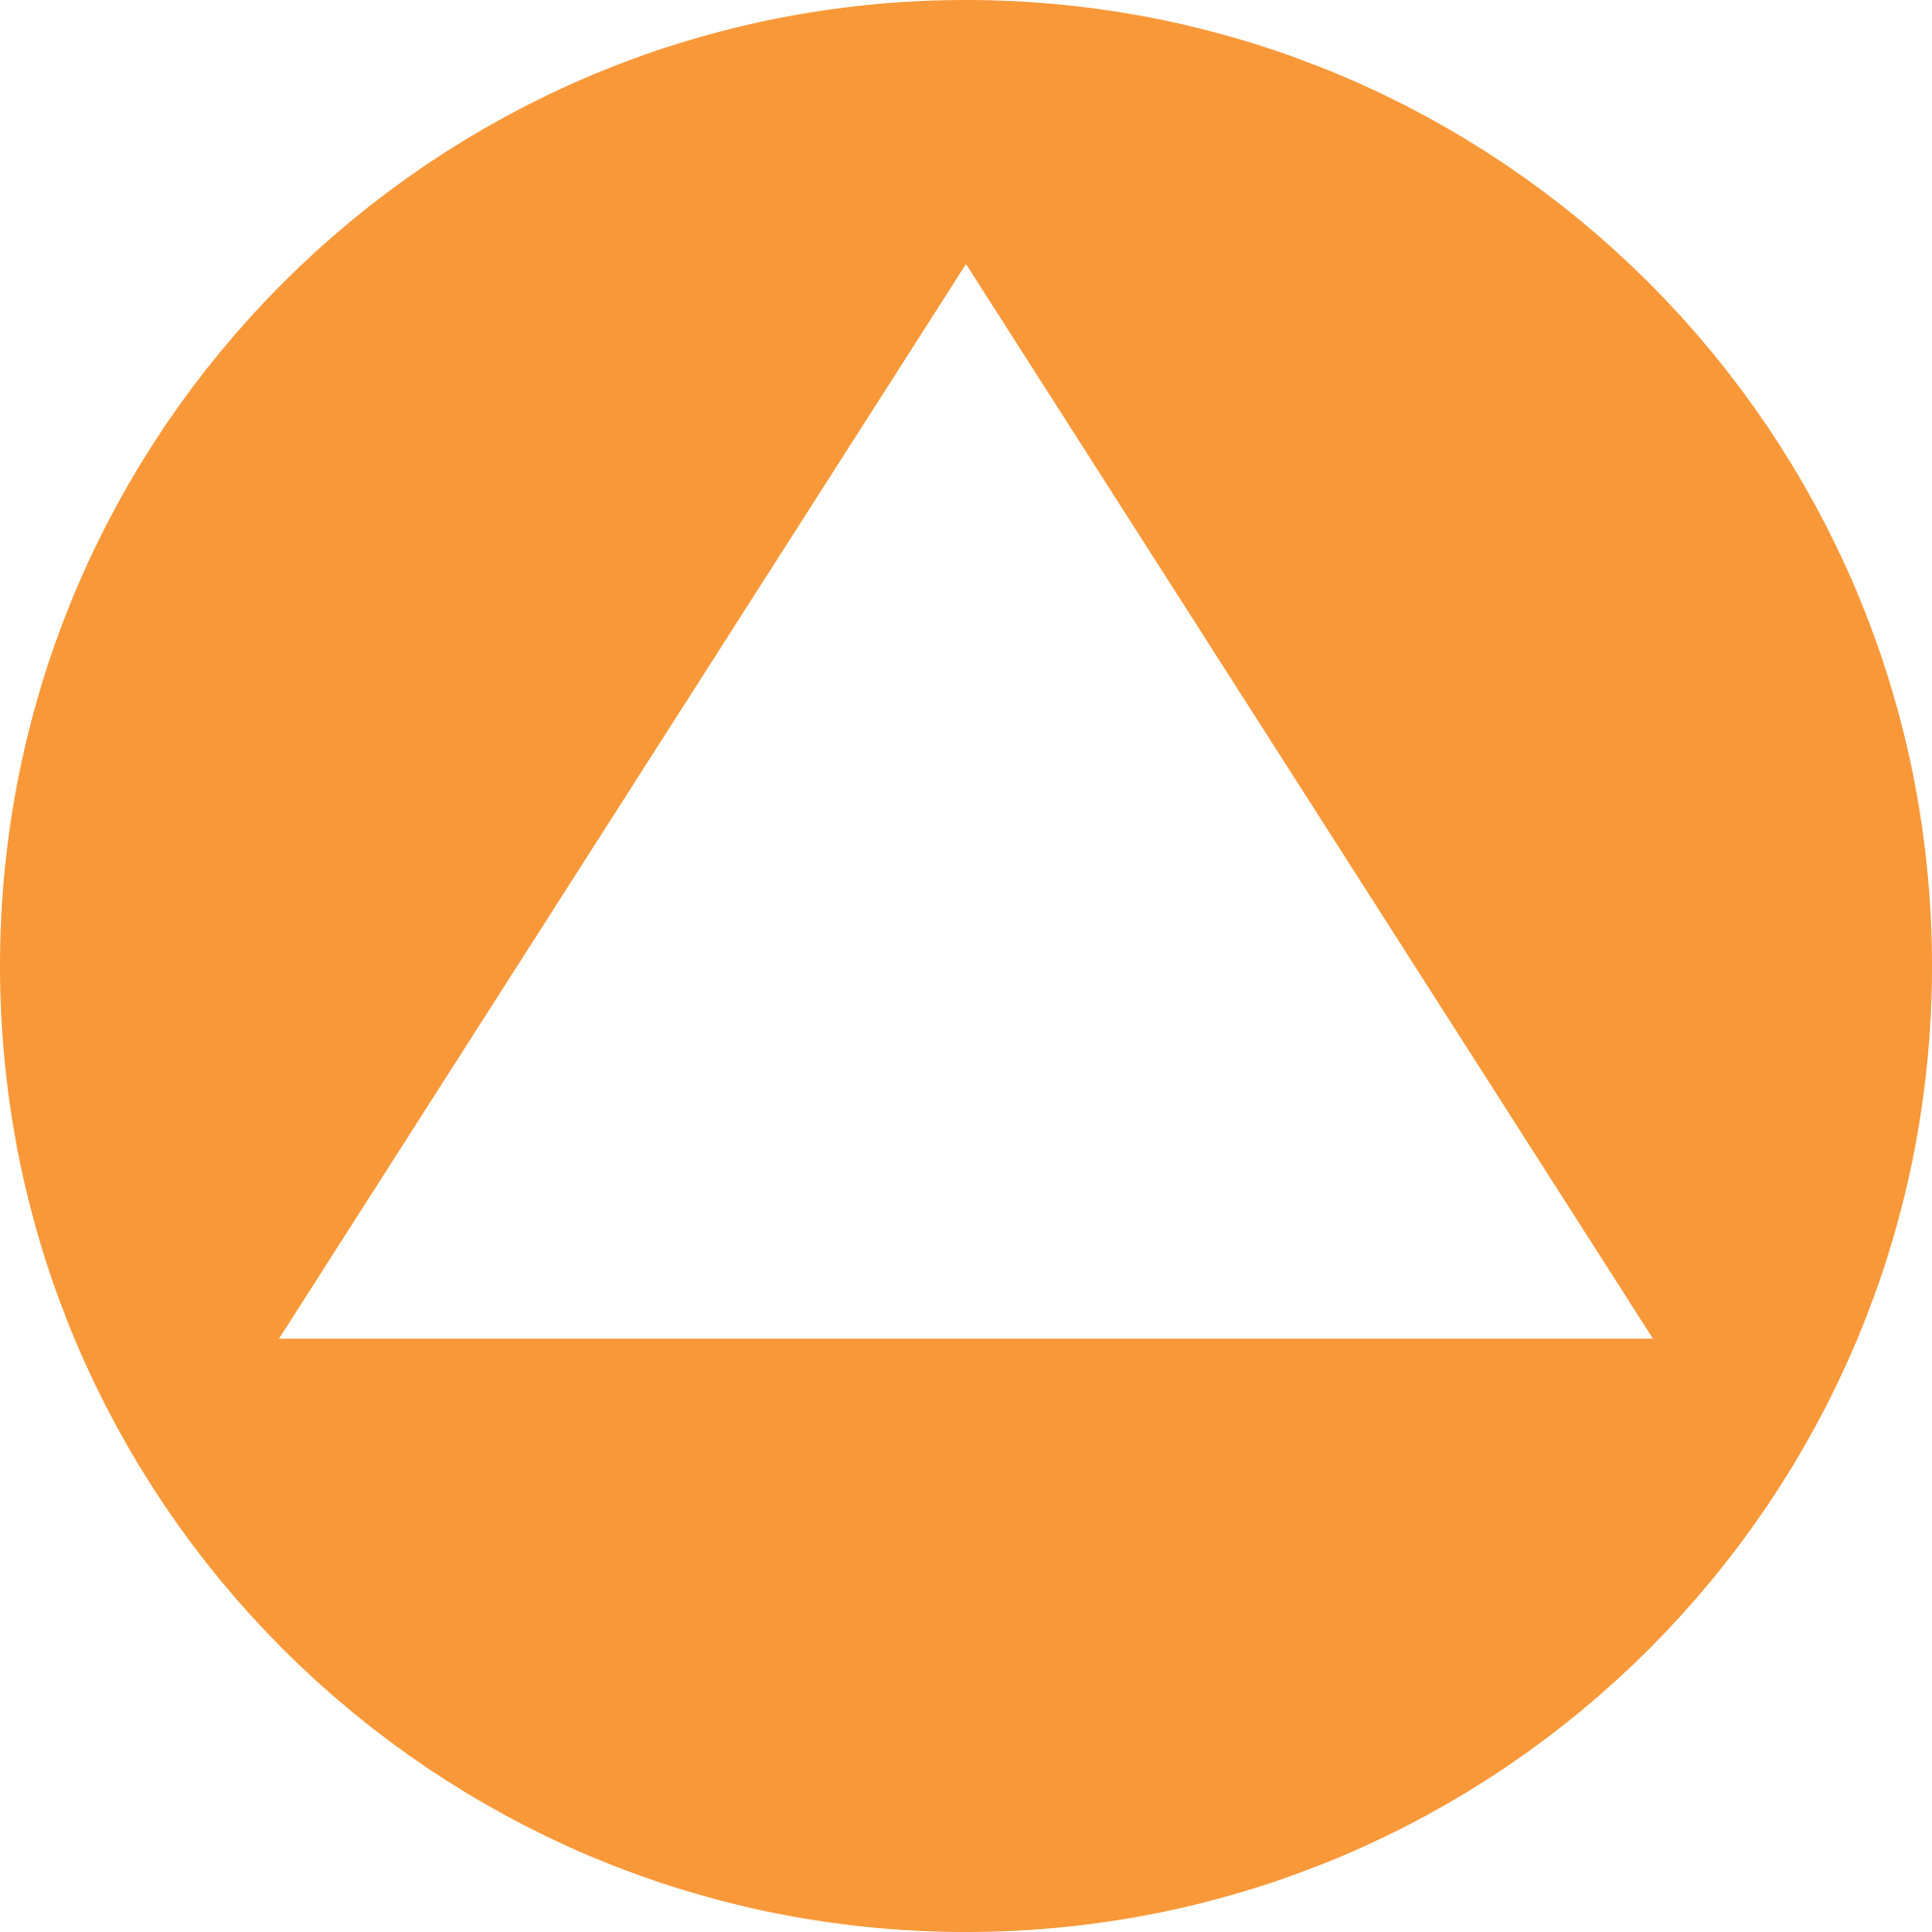 File:White triangle in orange background.svg